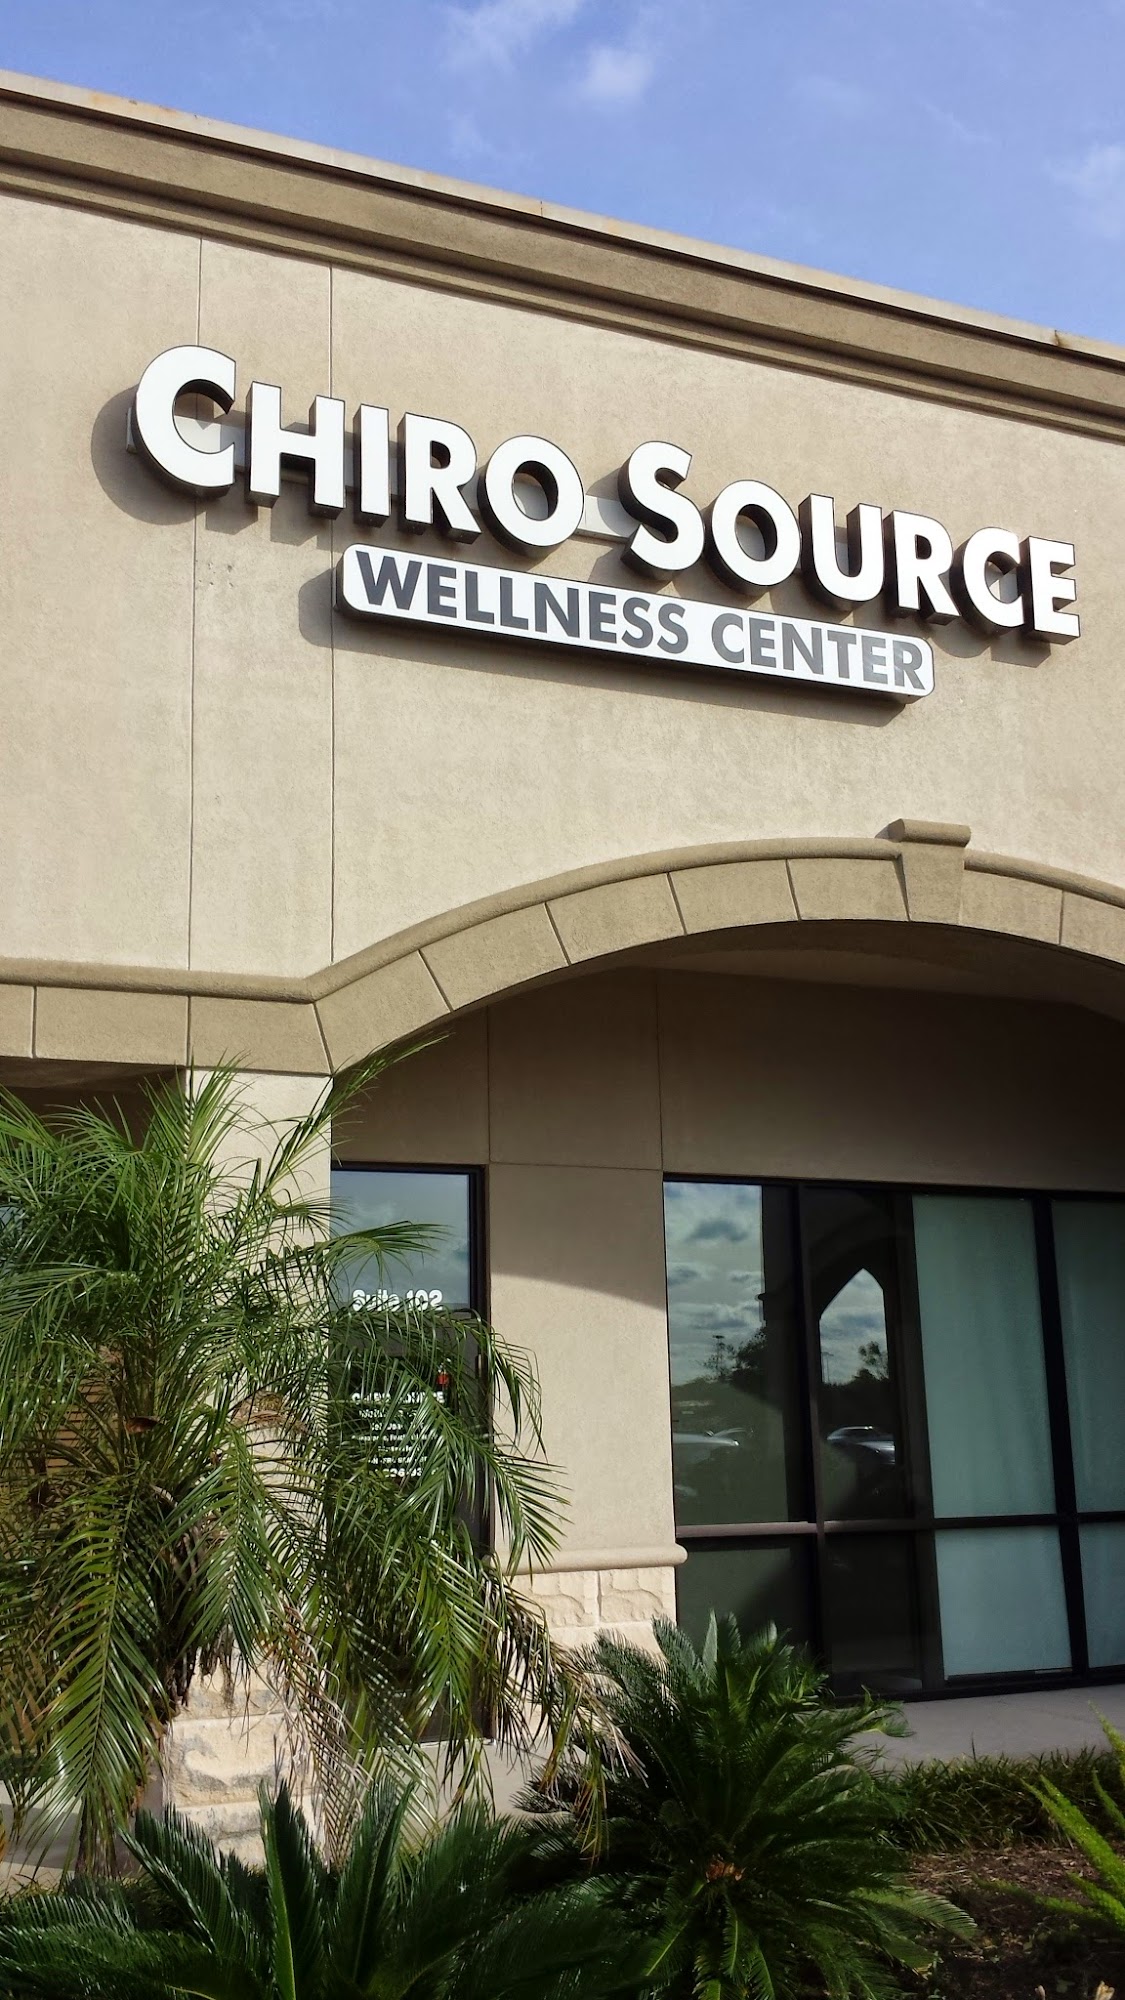 Chiro Source Wellness Center